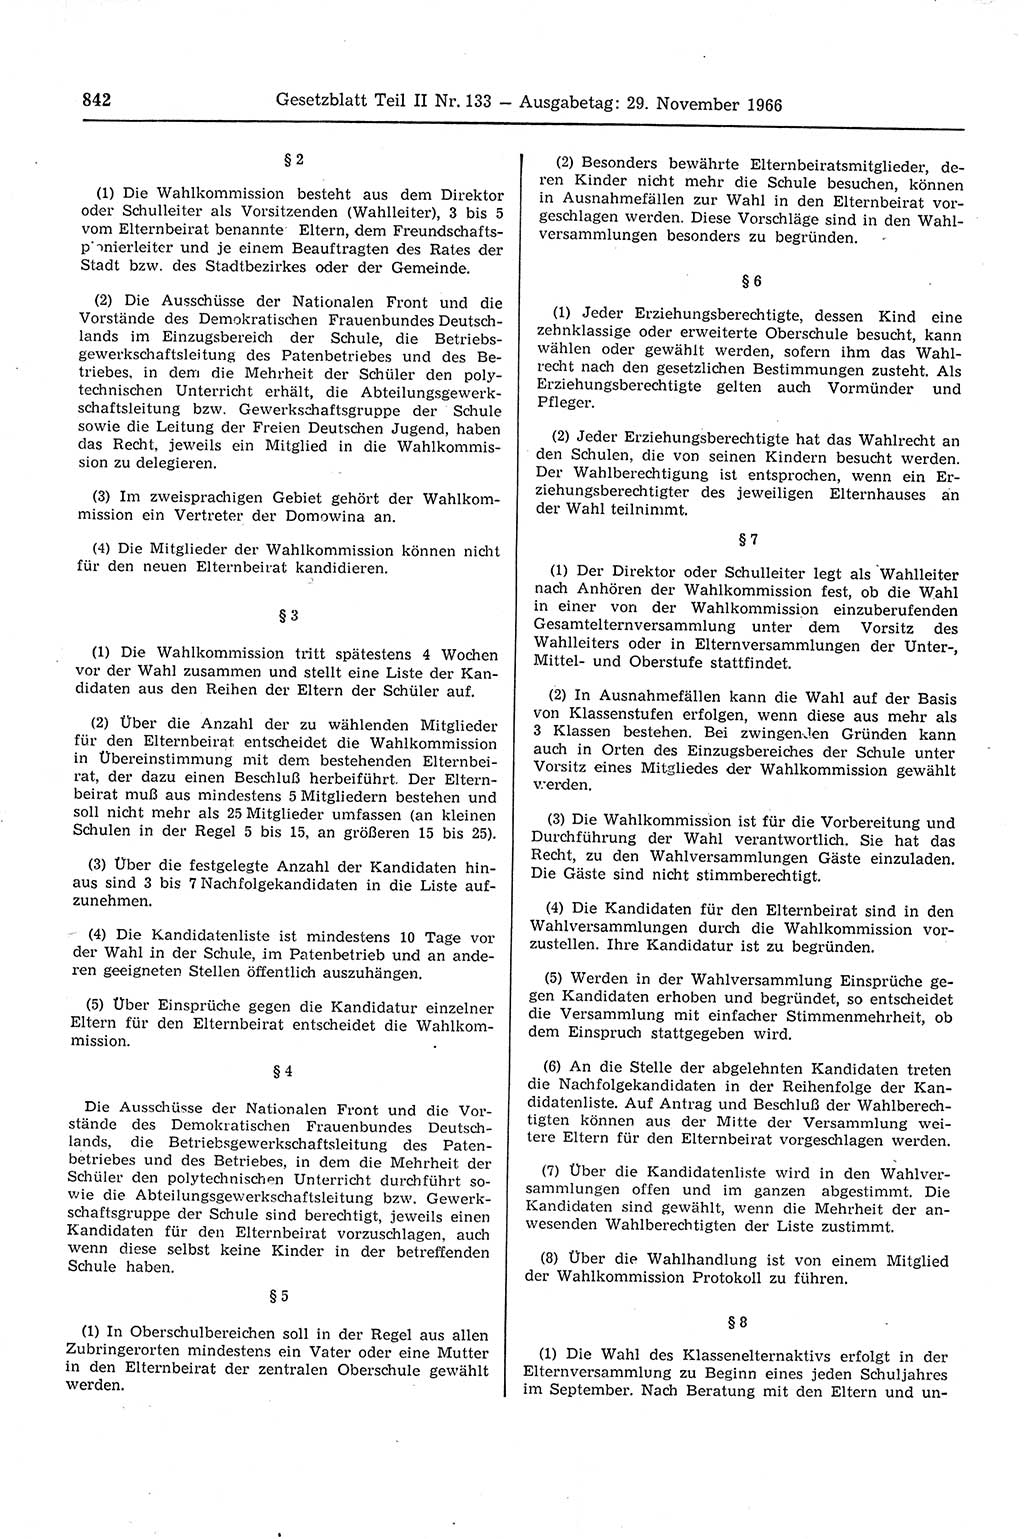 Gesetzblatt (GBl.) der Deutschen Demokratischen Republik (DDR) Teil ⅠⅠ 1966, Seite 842 (GBl. DDR ⅠⅠ 1966, S. 842)